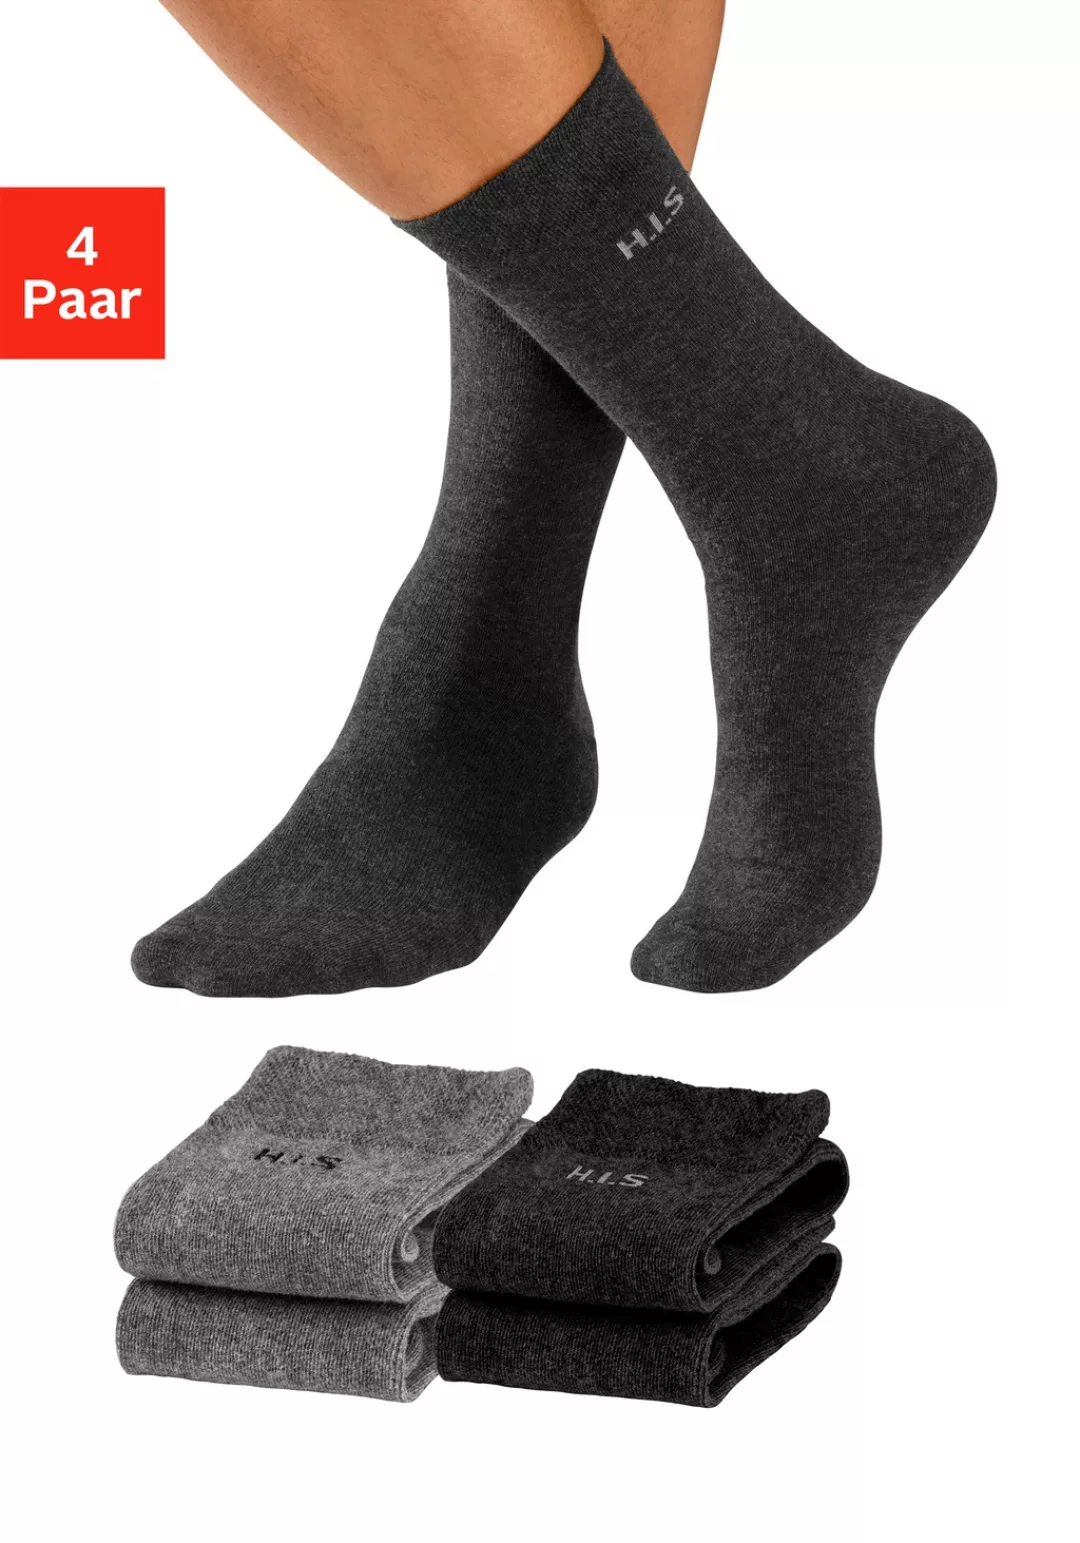 H.I.S Socken, (4 Paar) günstig online kaufen